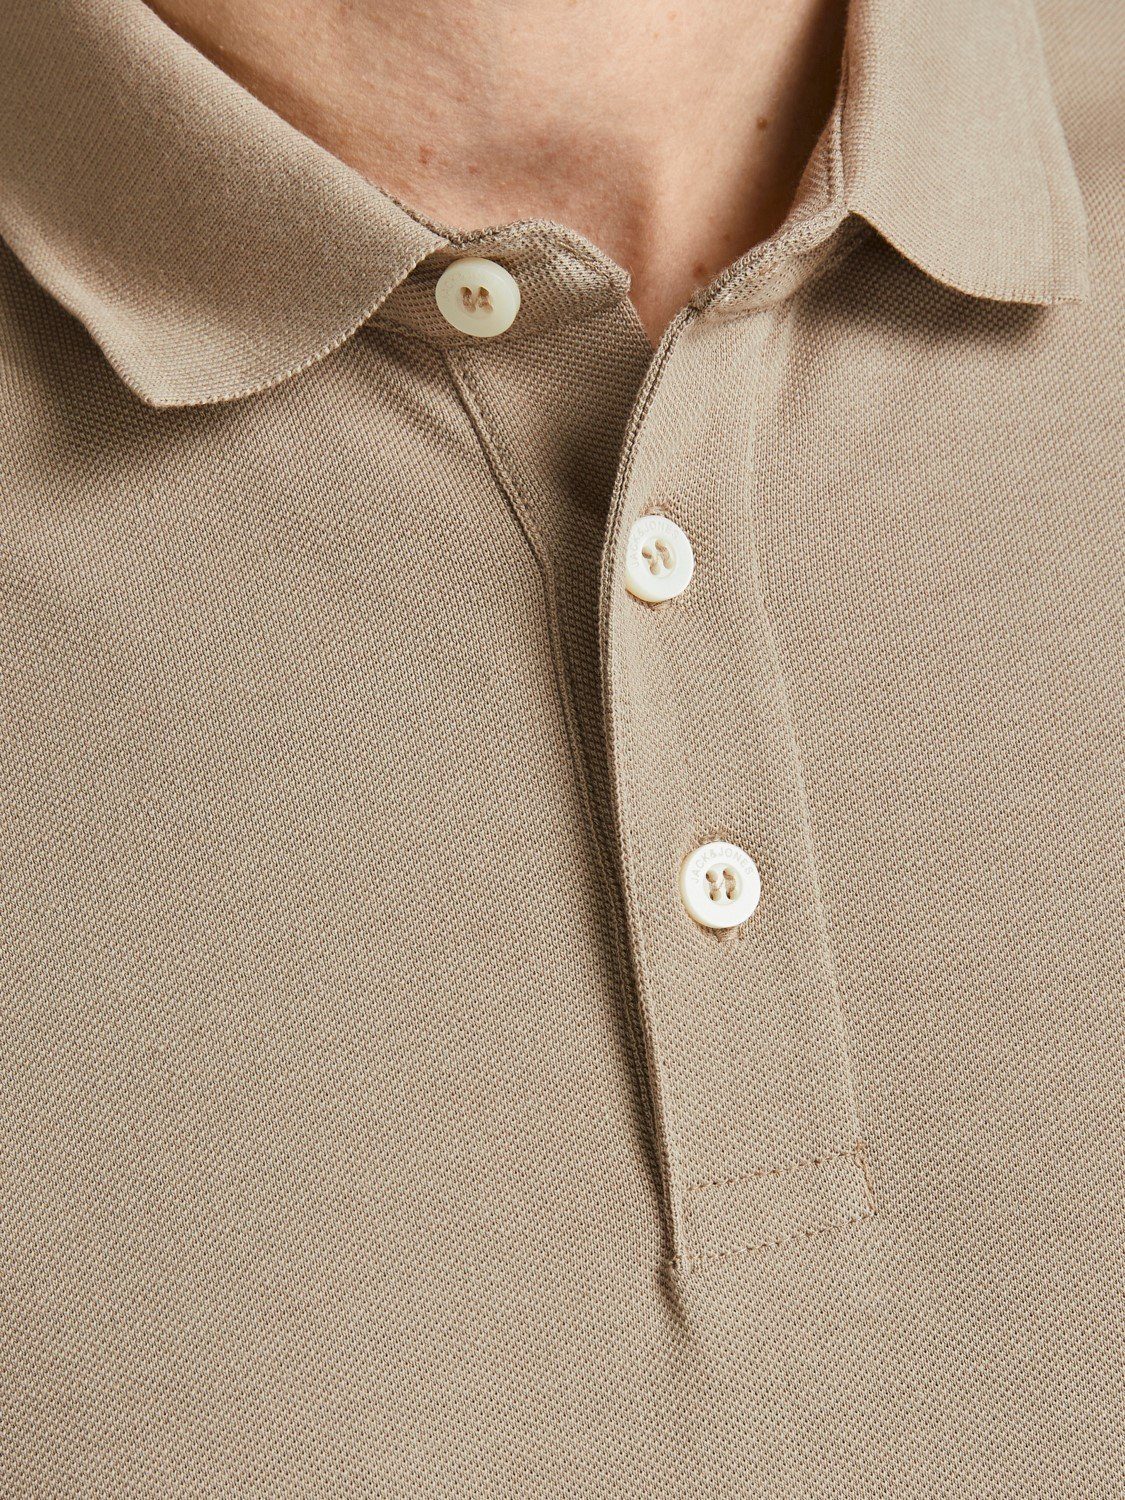 Hemd (1-tlg) Sommer Jones Jack Poloshirt Shirt Beige in Polo Kragen & 3613 Cotton Pique JJEPAULOS